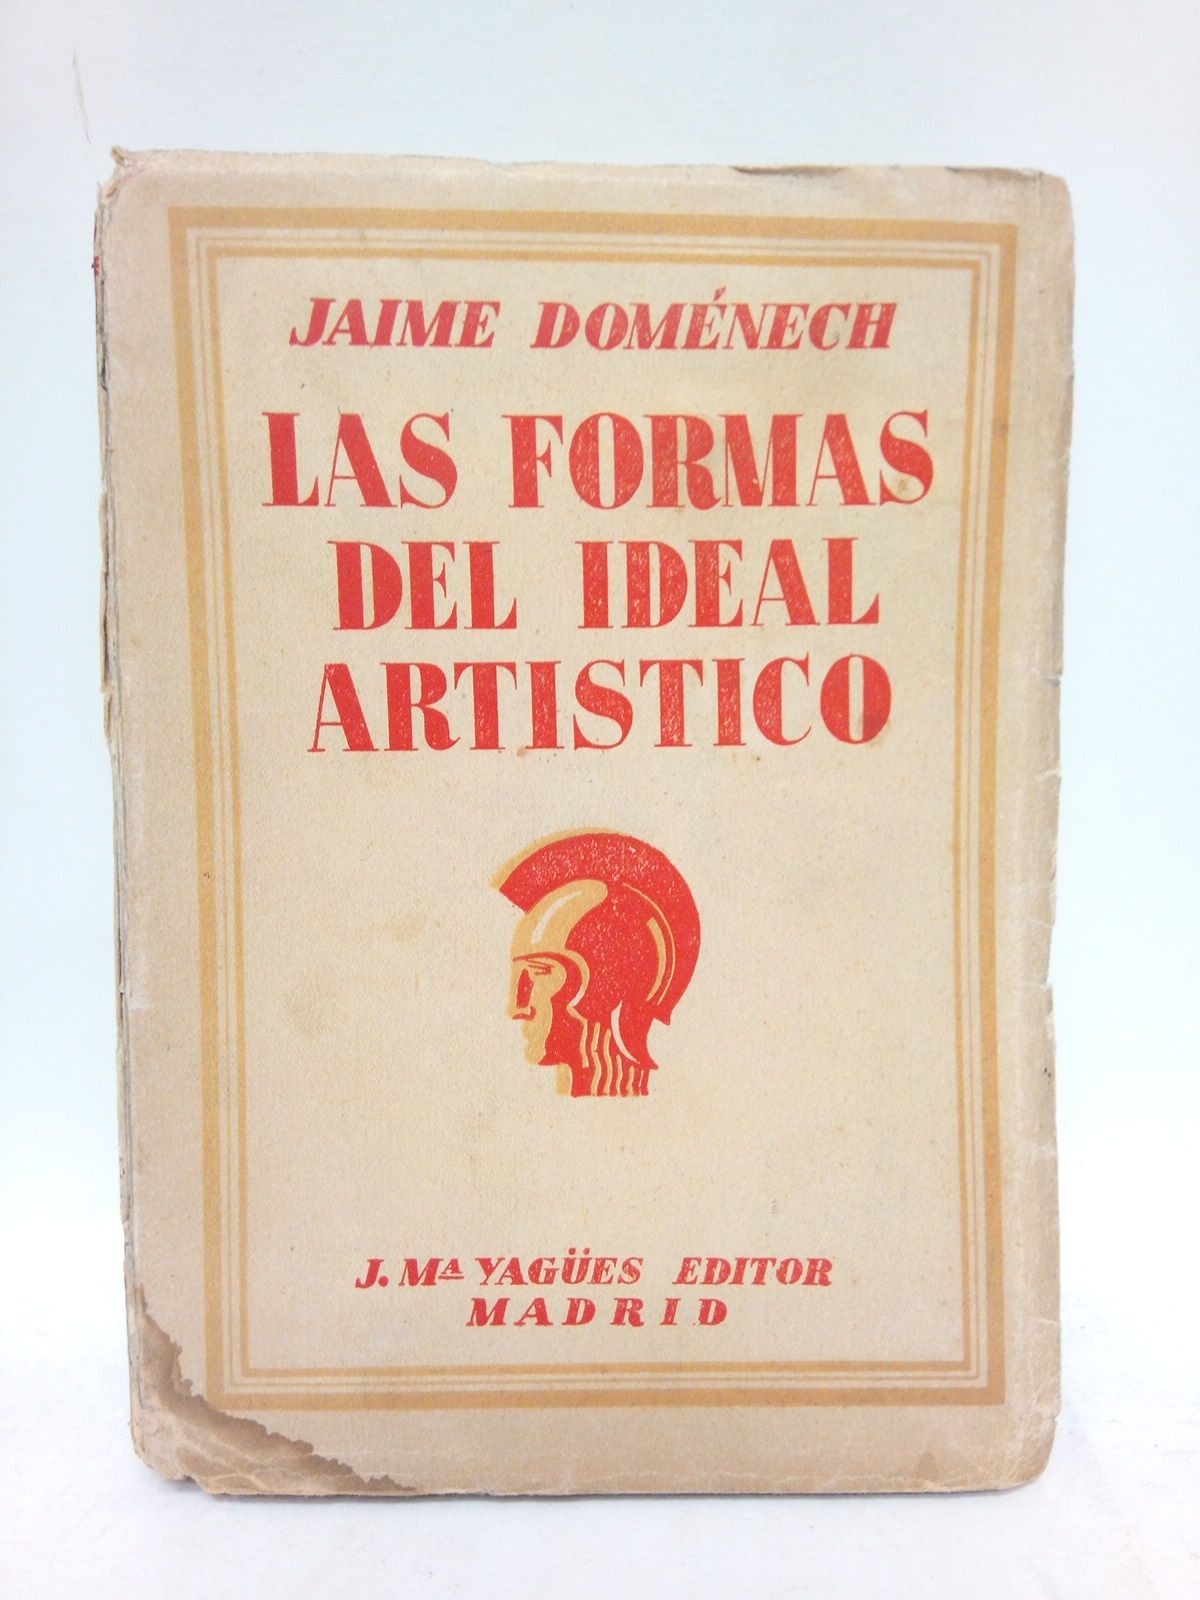 DOMENECH, Jaime - Las formas del ideal artstico